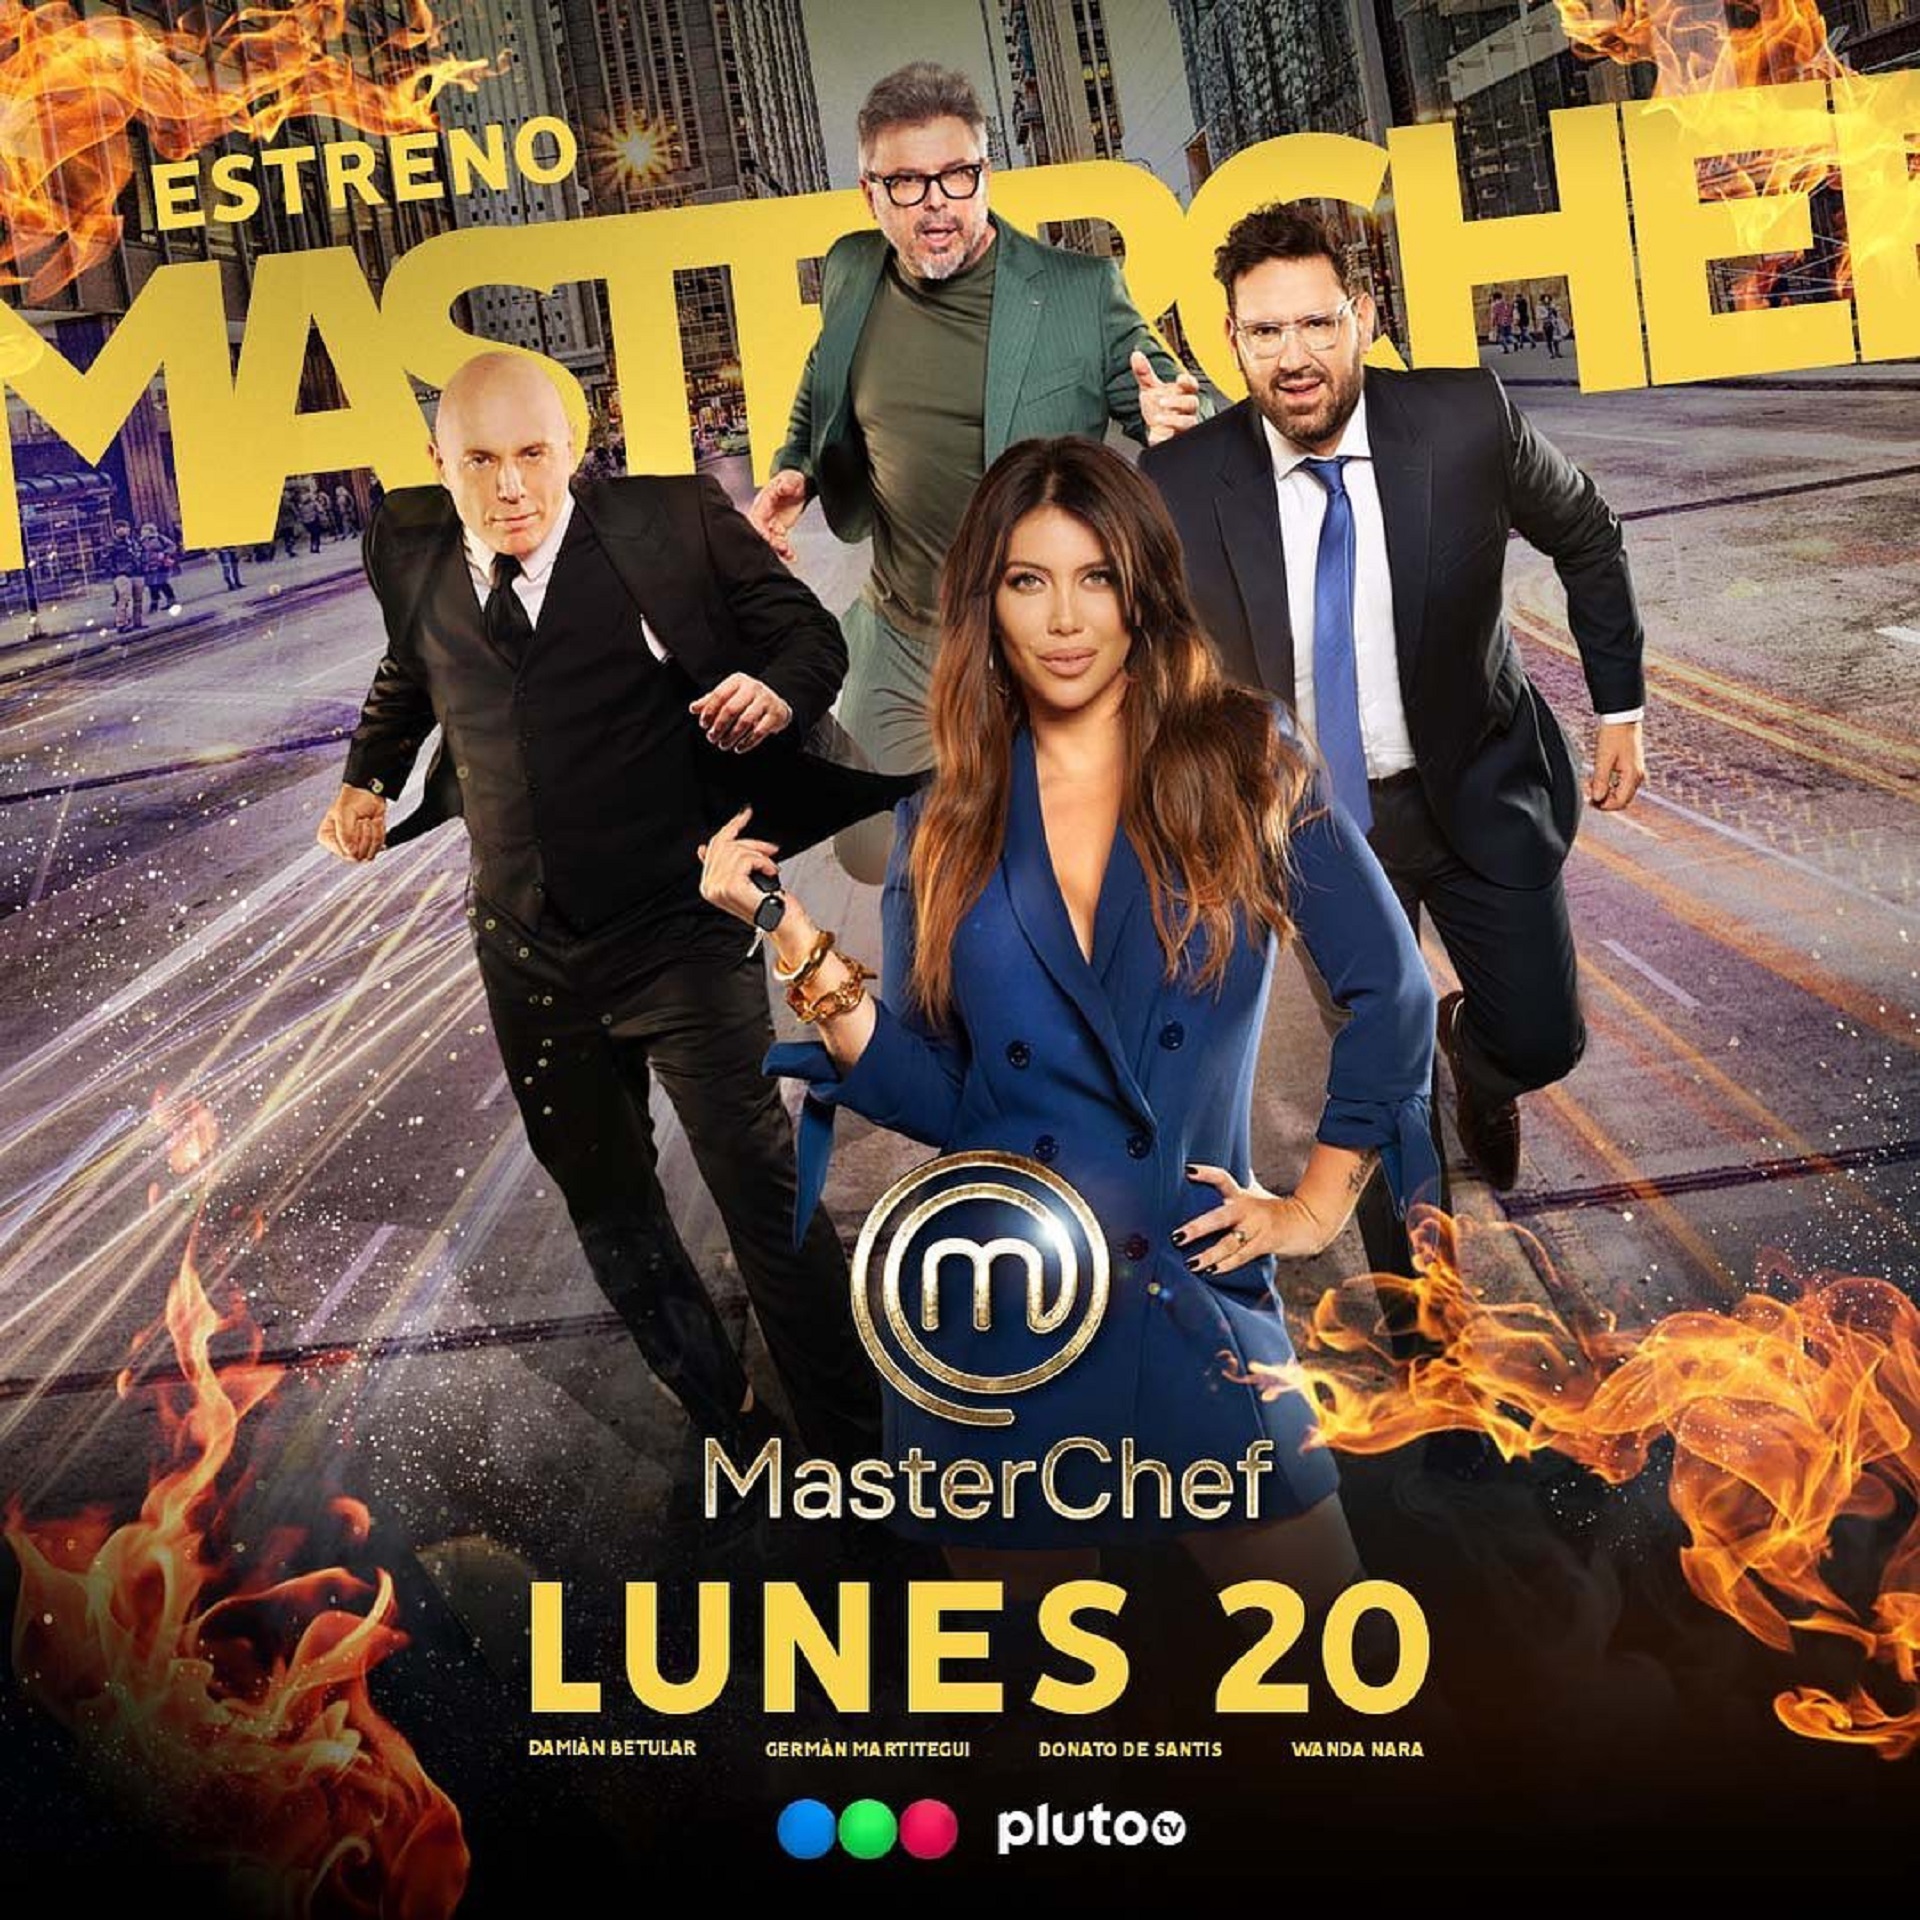 La nueva edición de MasterChef Argentina comienza el lunes 20 de marzo a las 21:30 por Telefe